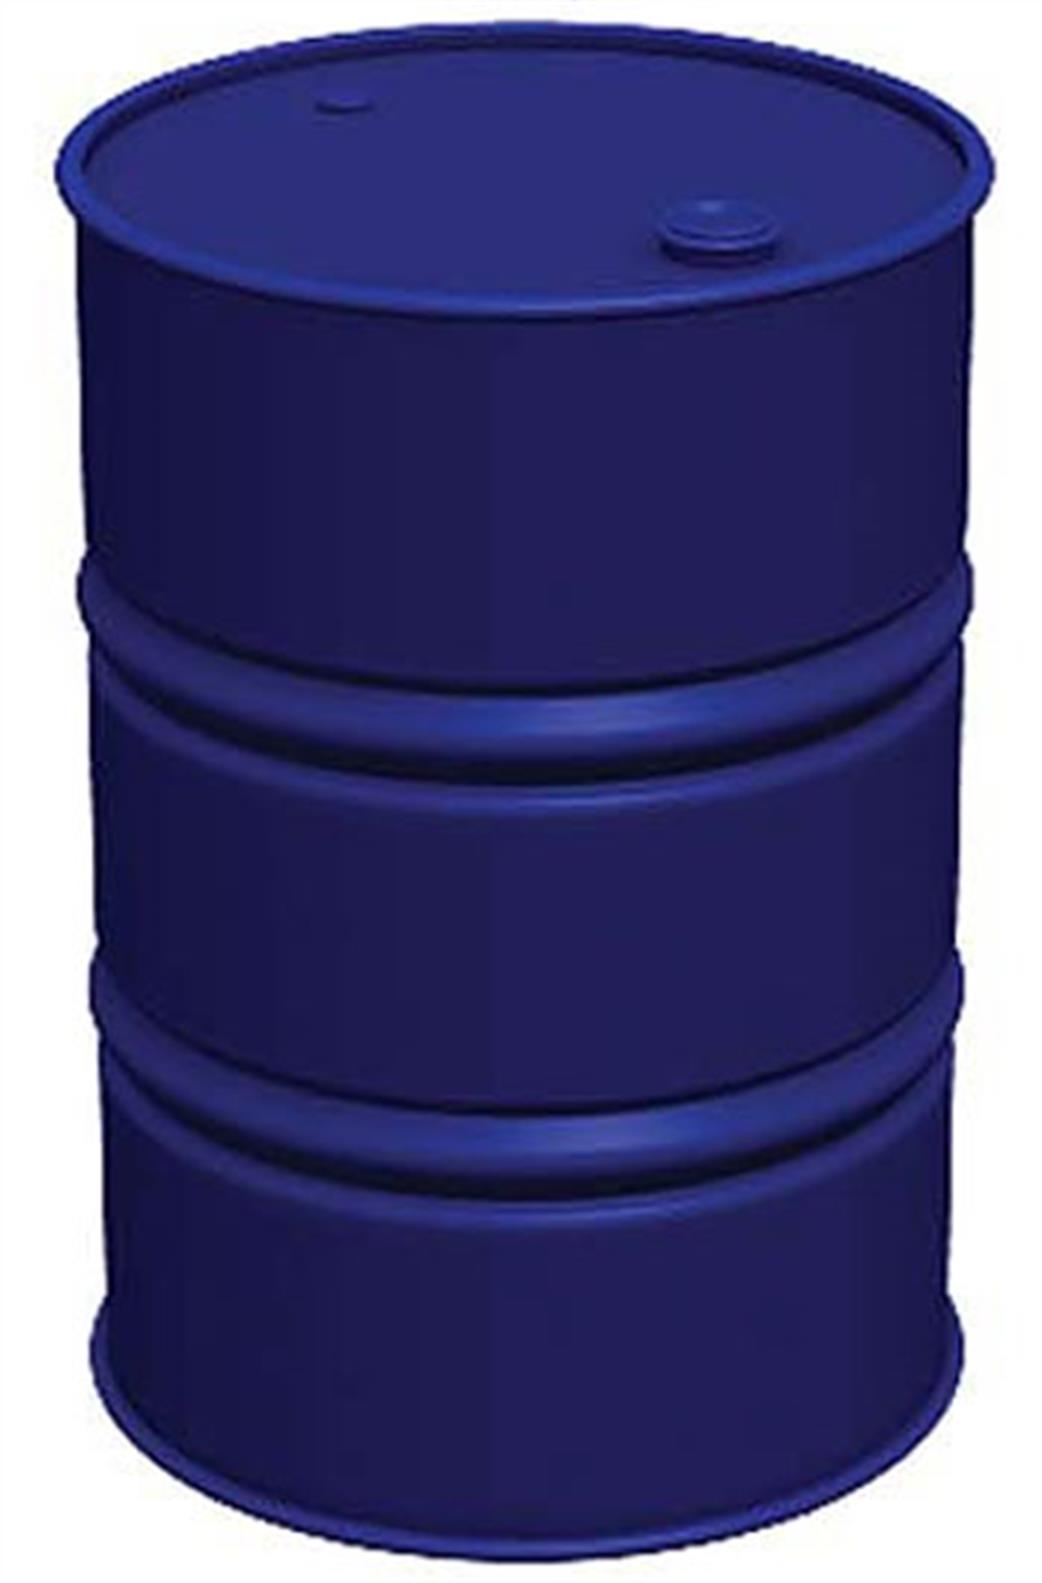 Bachmann 44-519 Oil Barrels x10 from Scenecraft Range OO